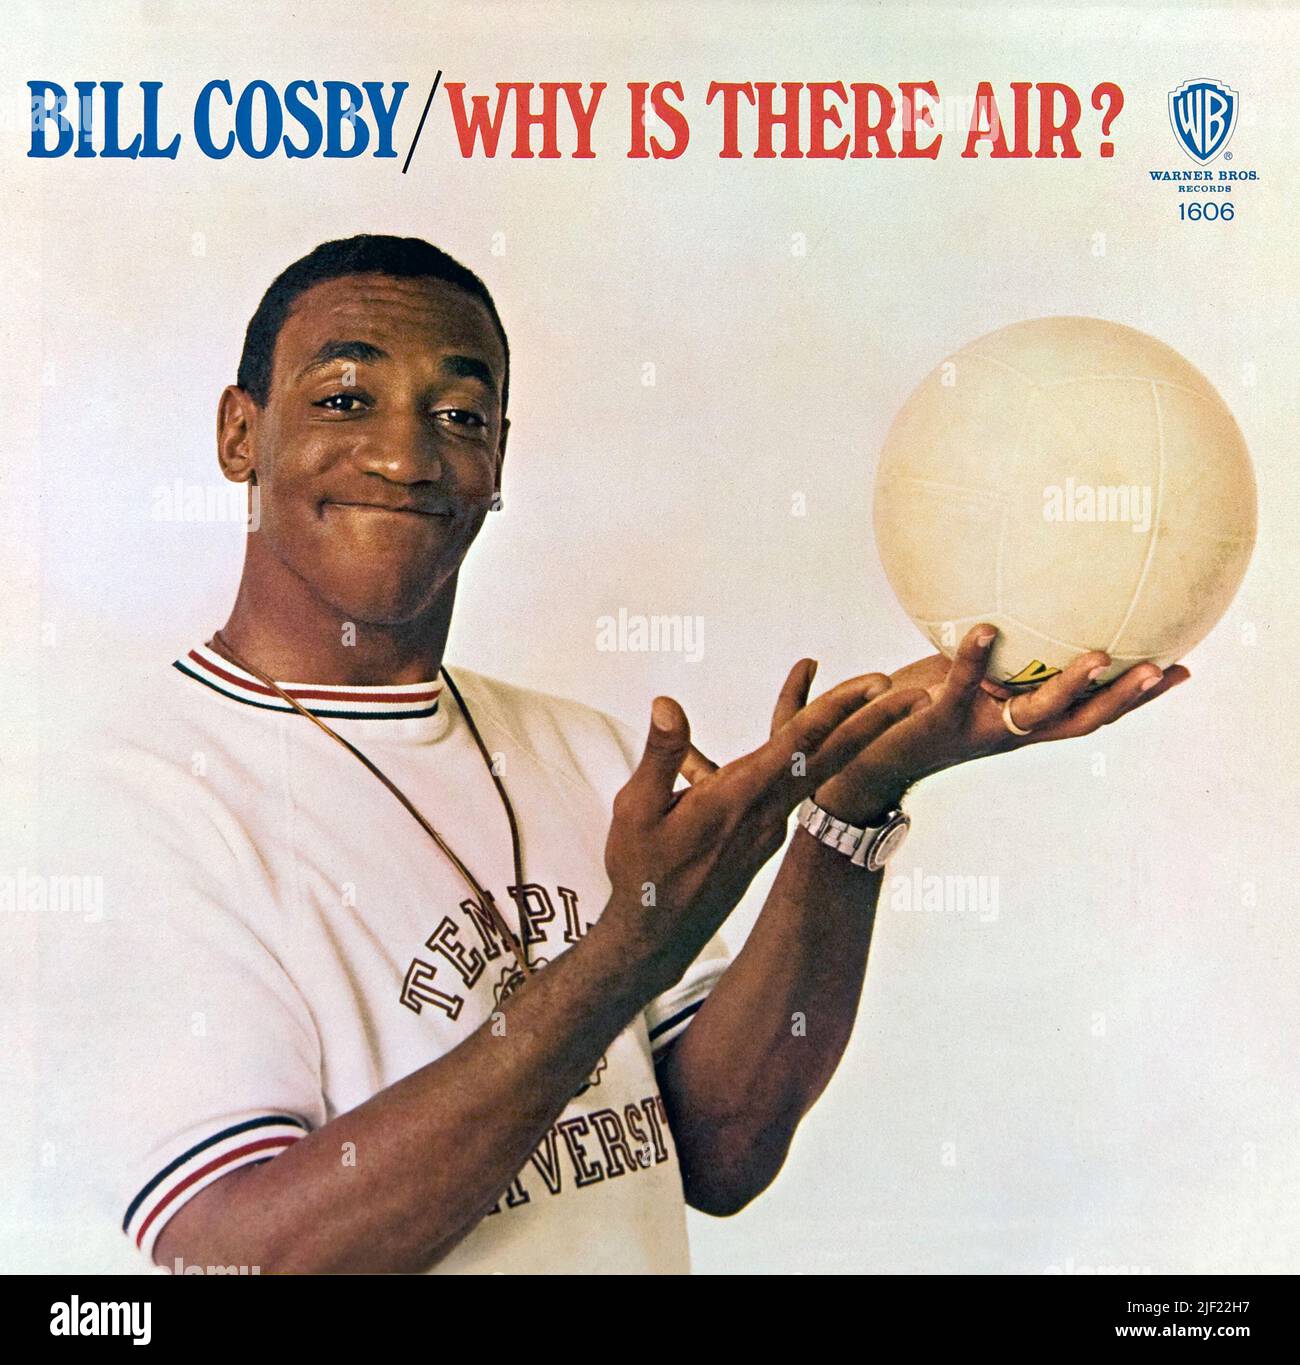 Bill Cosby funda del álbum de comedia Why Is There Air, lanzado en 1965 por Warner Bros. Foto de stock